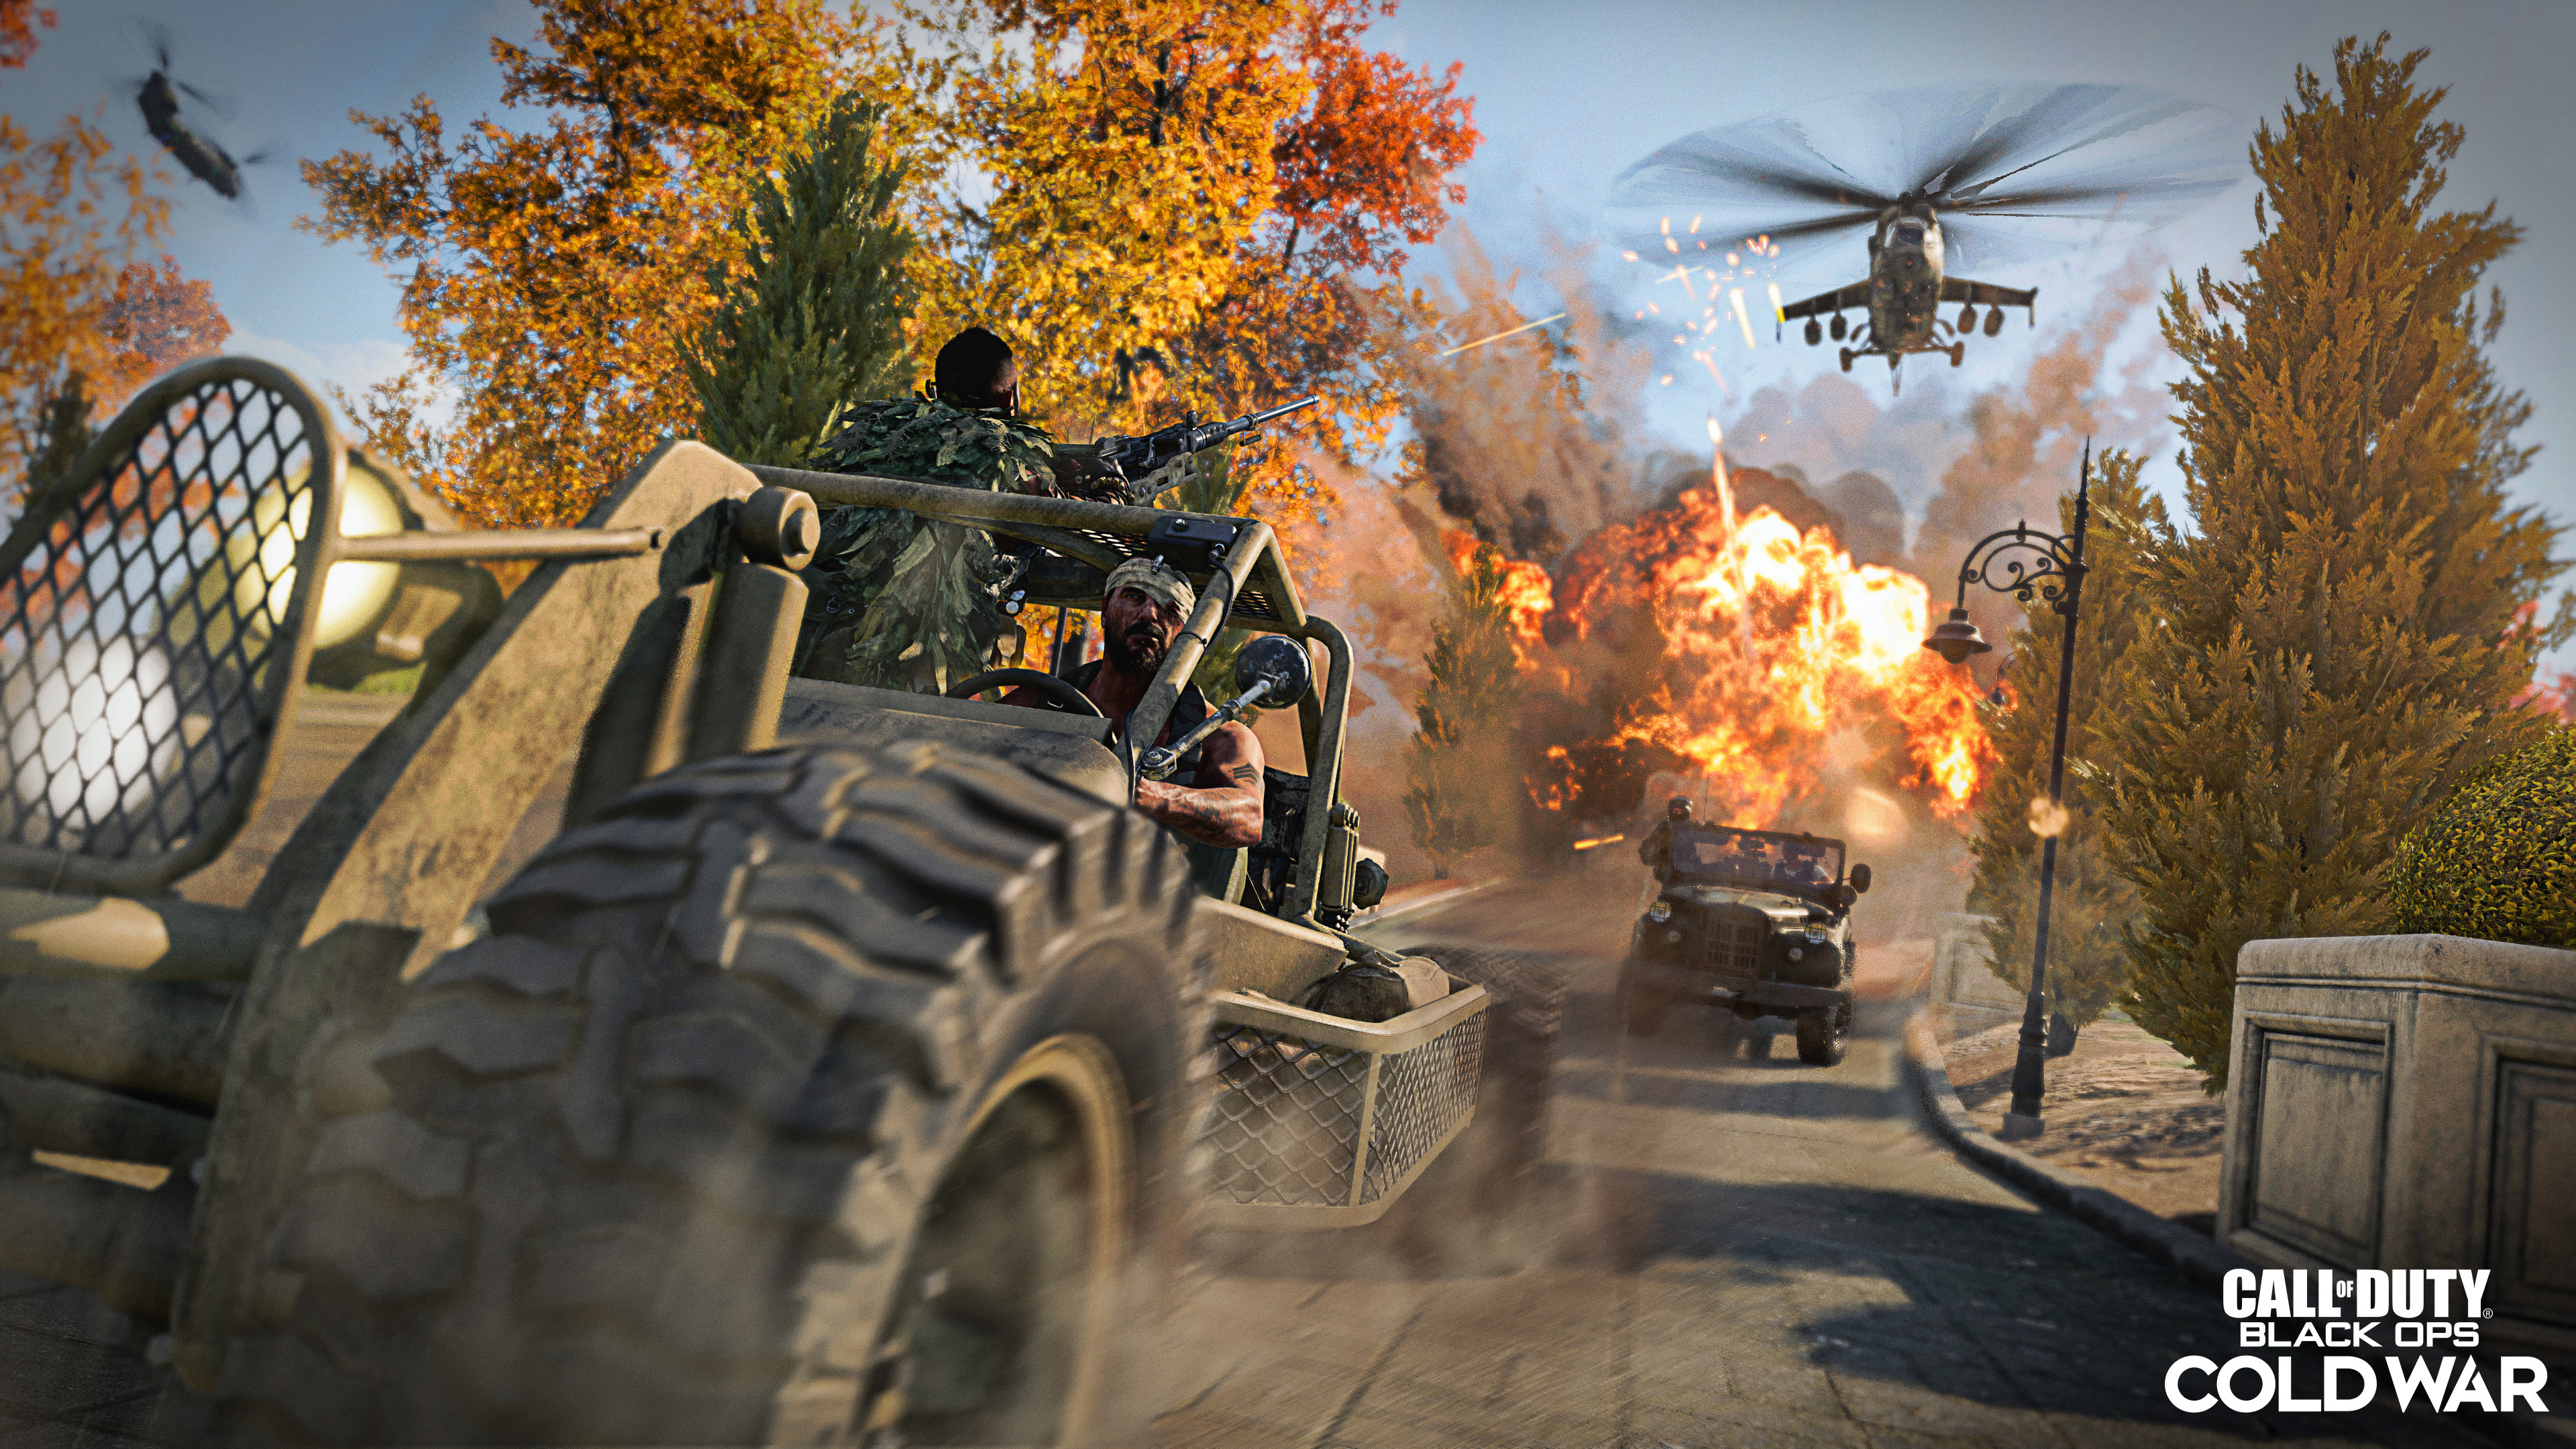 Descarga gratuita de fondo de pantalla para móvil de Obligaciones, Videojuego, Call Of Duty, Call Of Duty: Black Ops Cold War.